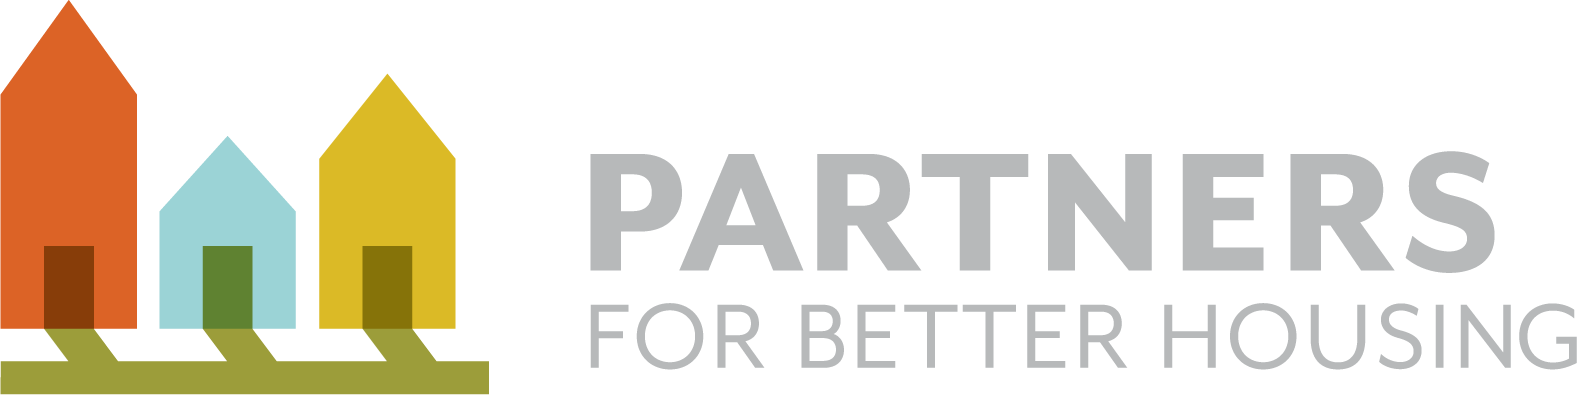 Fayetteville Partners for Better Housing logo